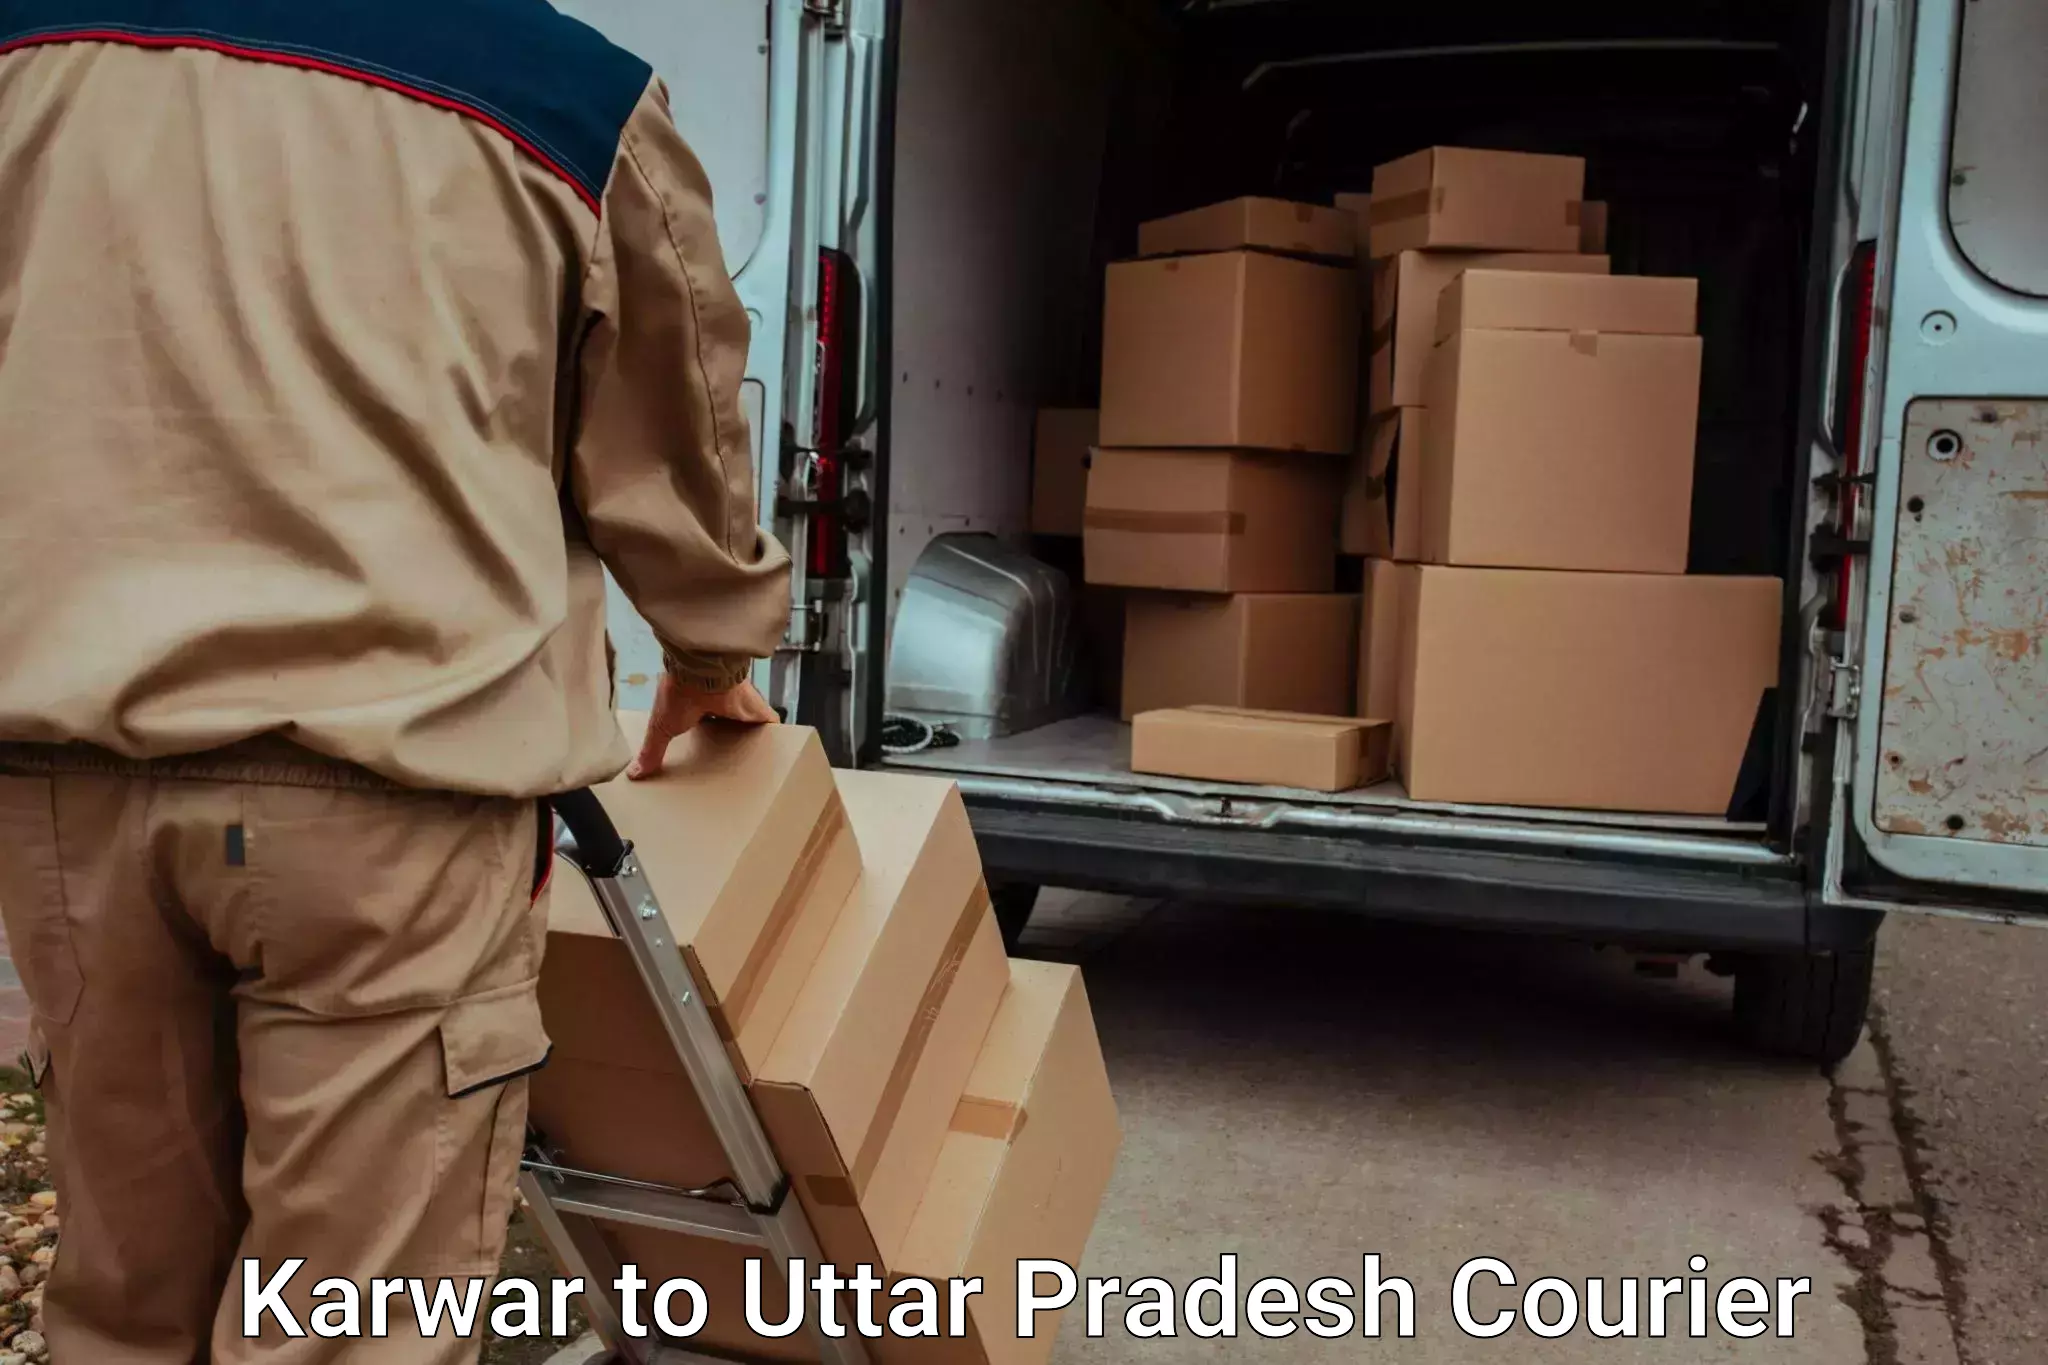 Premium furniture transport Karwar to Ambuj Nagar